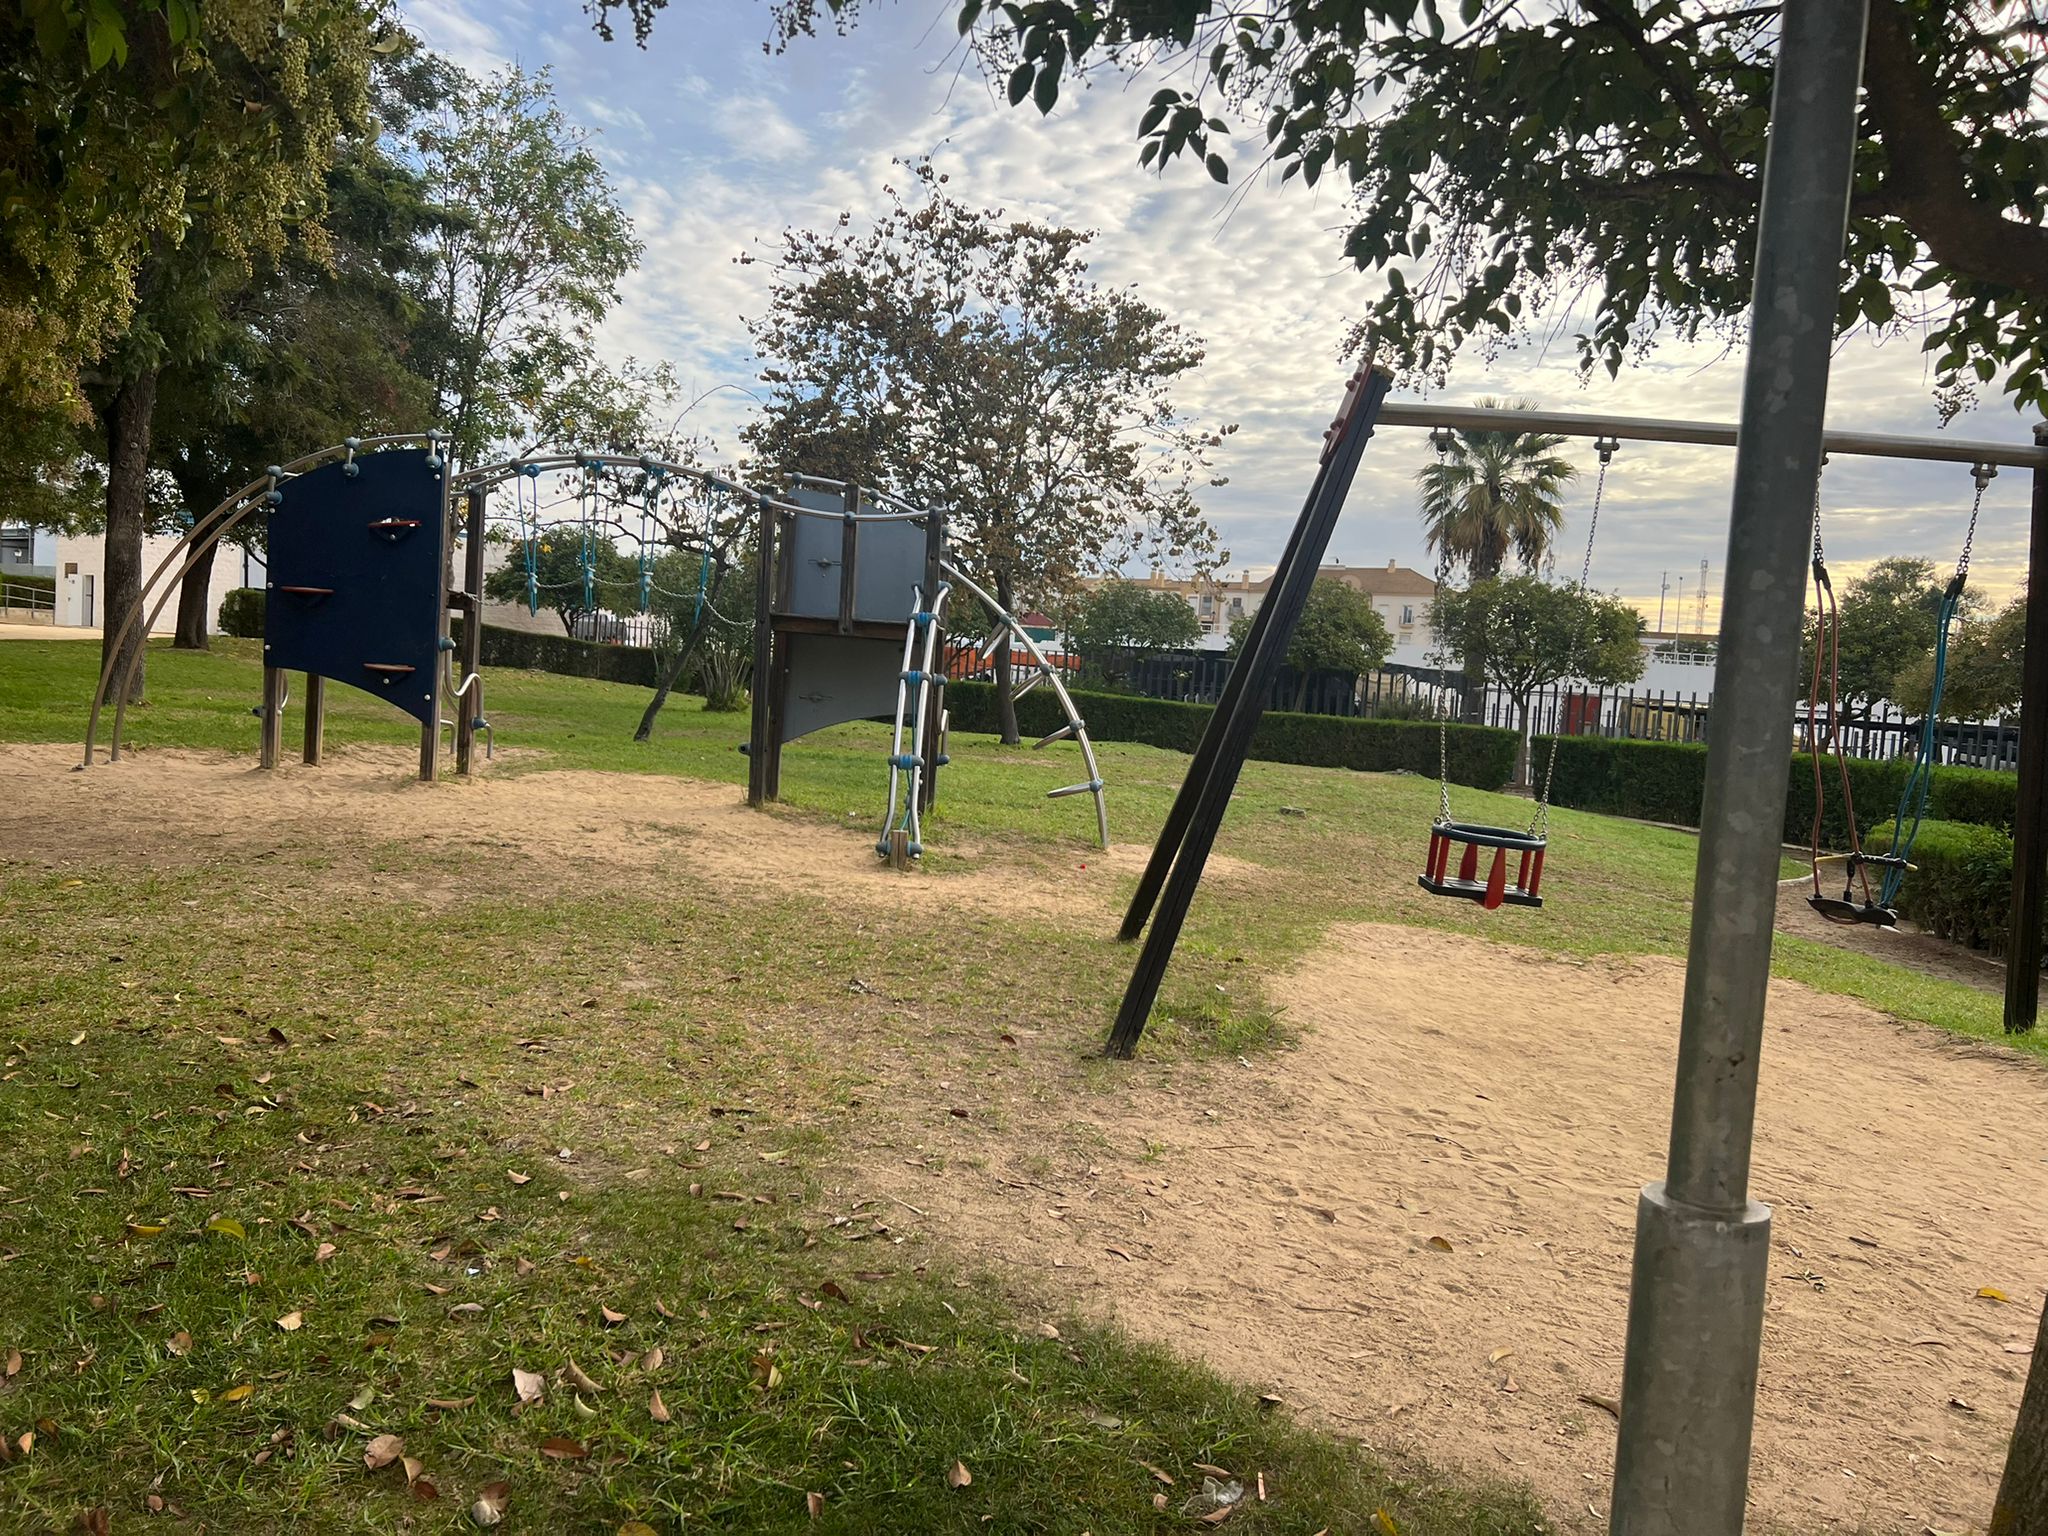 El Ayuntamiento de Trigueros transformará la zona de juegos infantiles del Parque El Pacífico